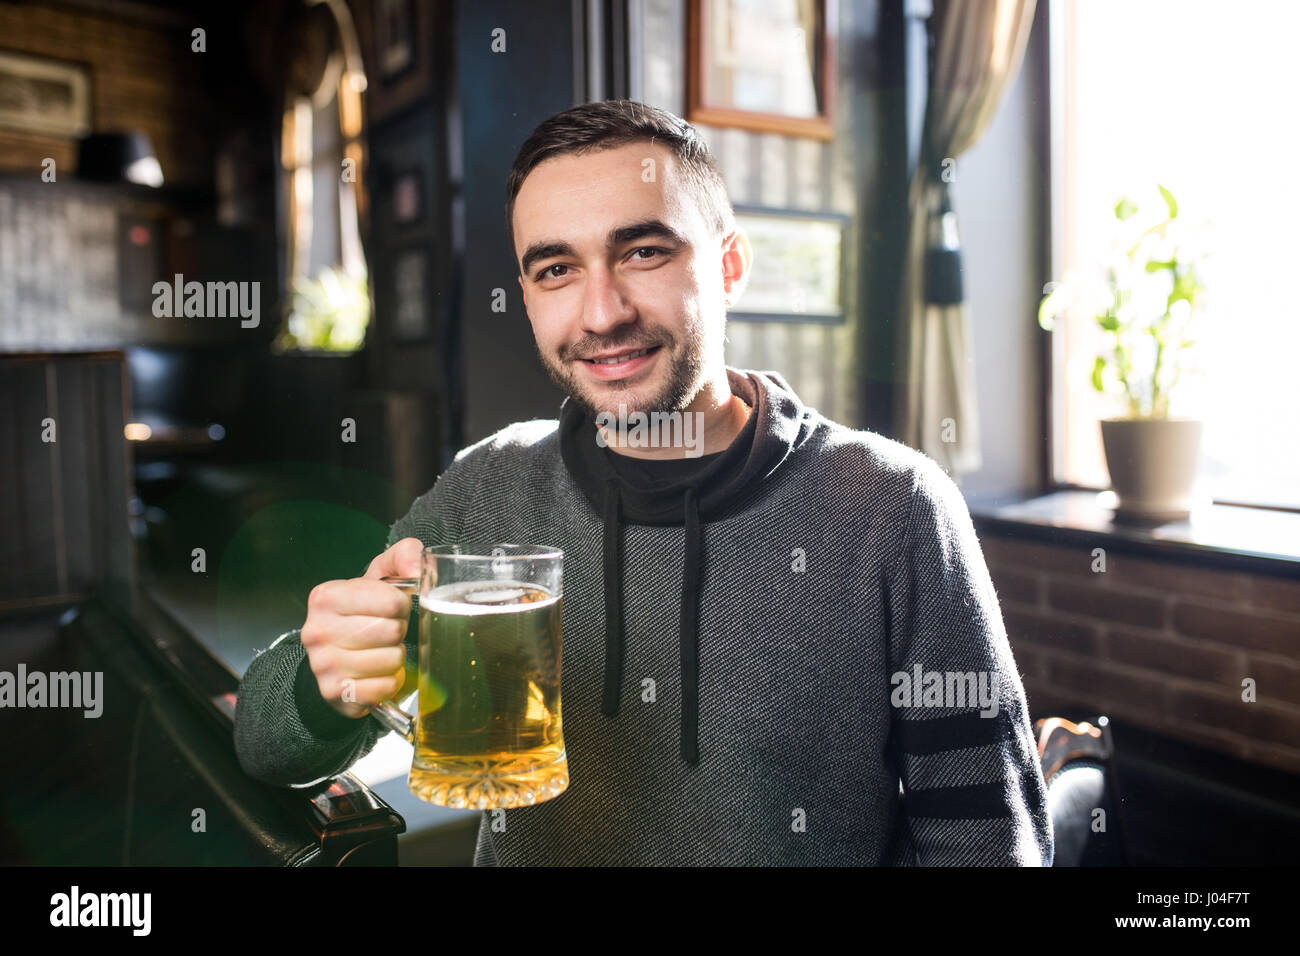 einziger Mann in einer Kneipe oder bar hält das Bier hoch in die Luft  Stockfotografie - Alamy